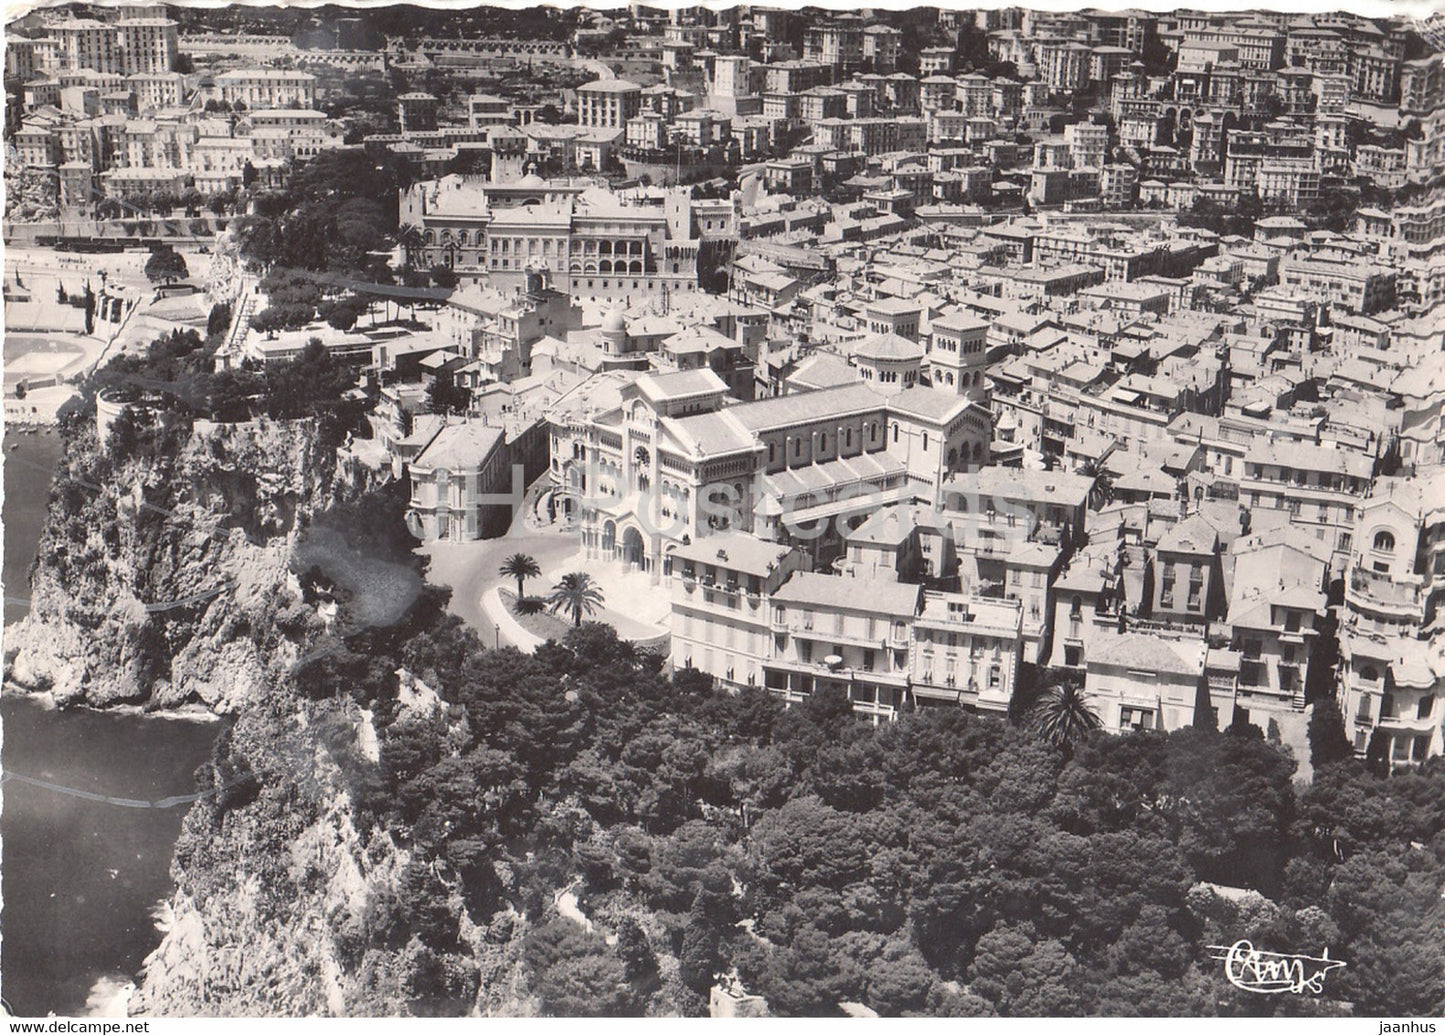 Vue aerienne sur la Cathedrale - Le Chateau - cathedral - castle - old postcard - 1953 - Monaco - used - JH Postcards